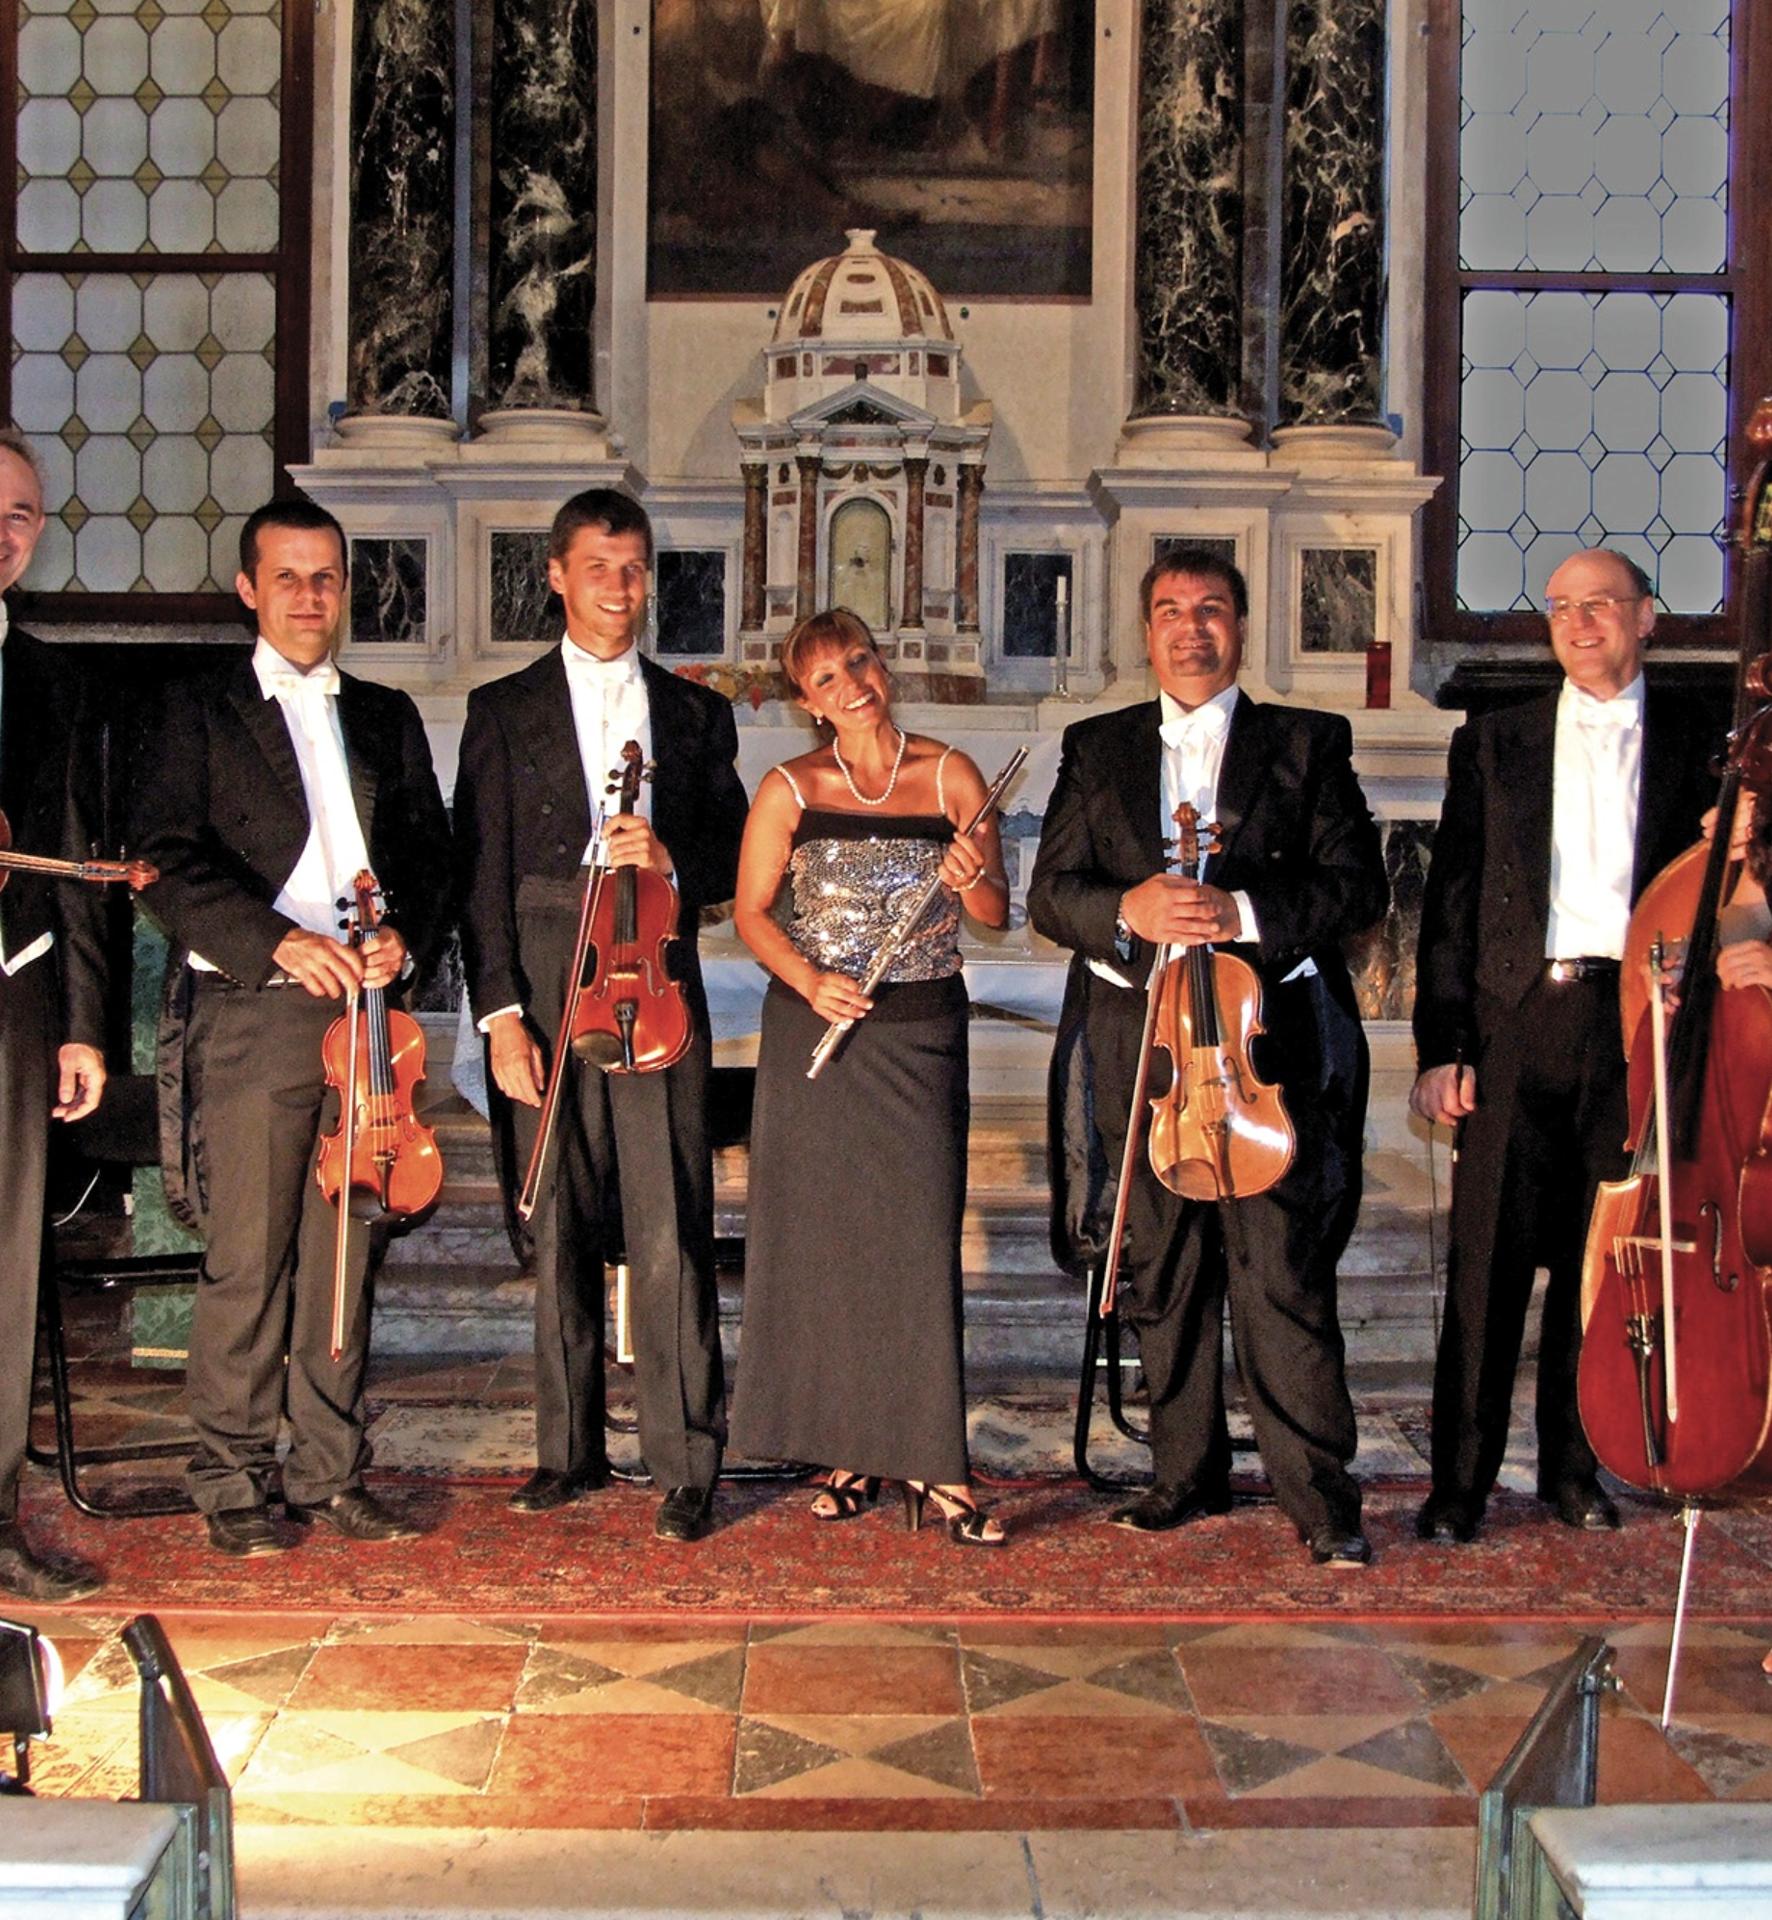 Concert de musique classique dans un palais au cœur de Venise